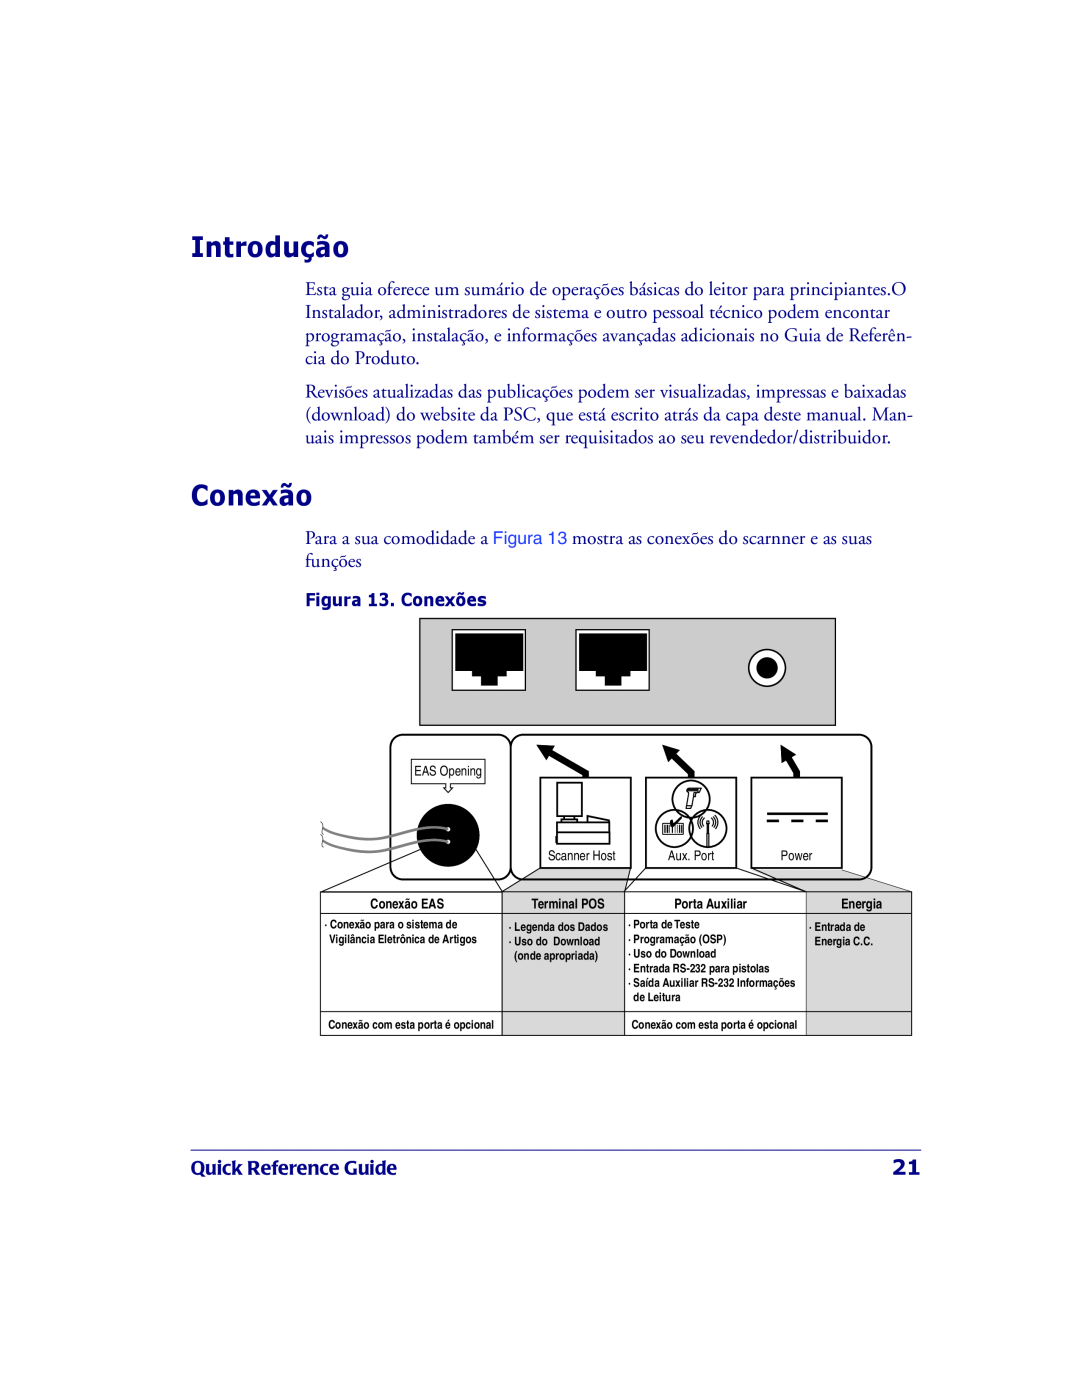 PSC 2200VS manual Introdução, Conexão, Quick Reference Guide, Figura 13. Conexões 